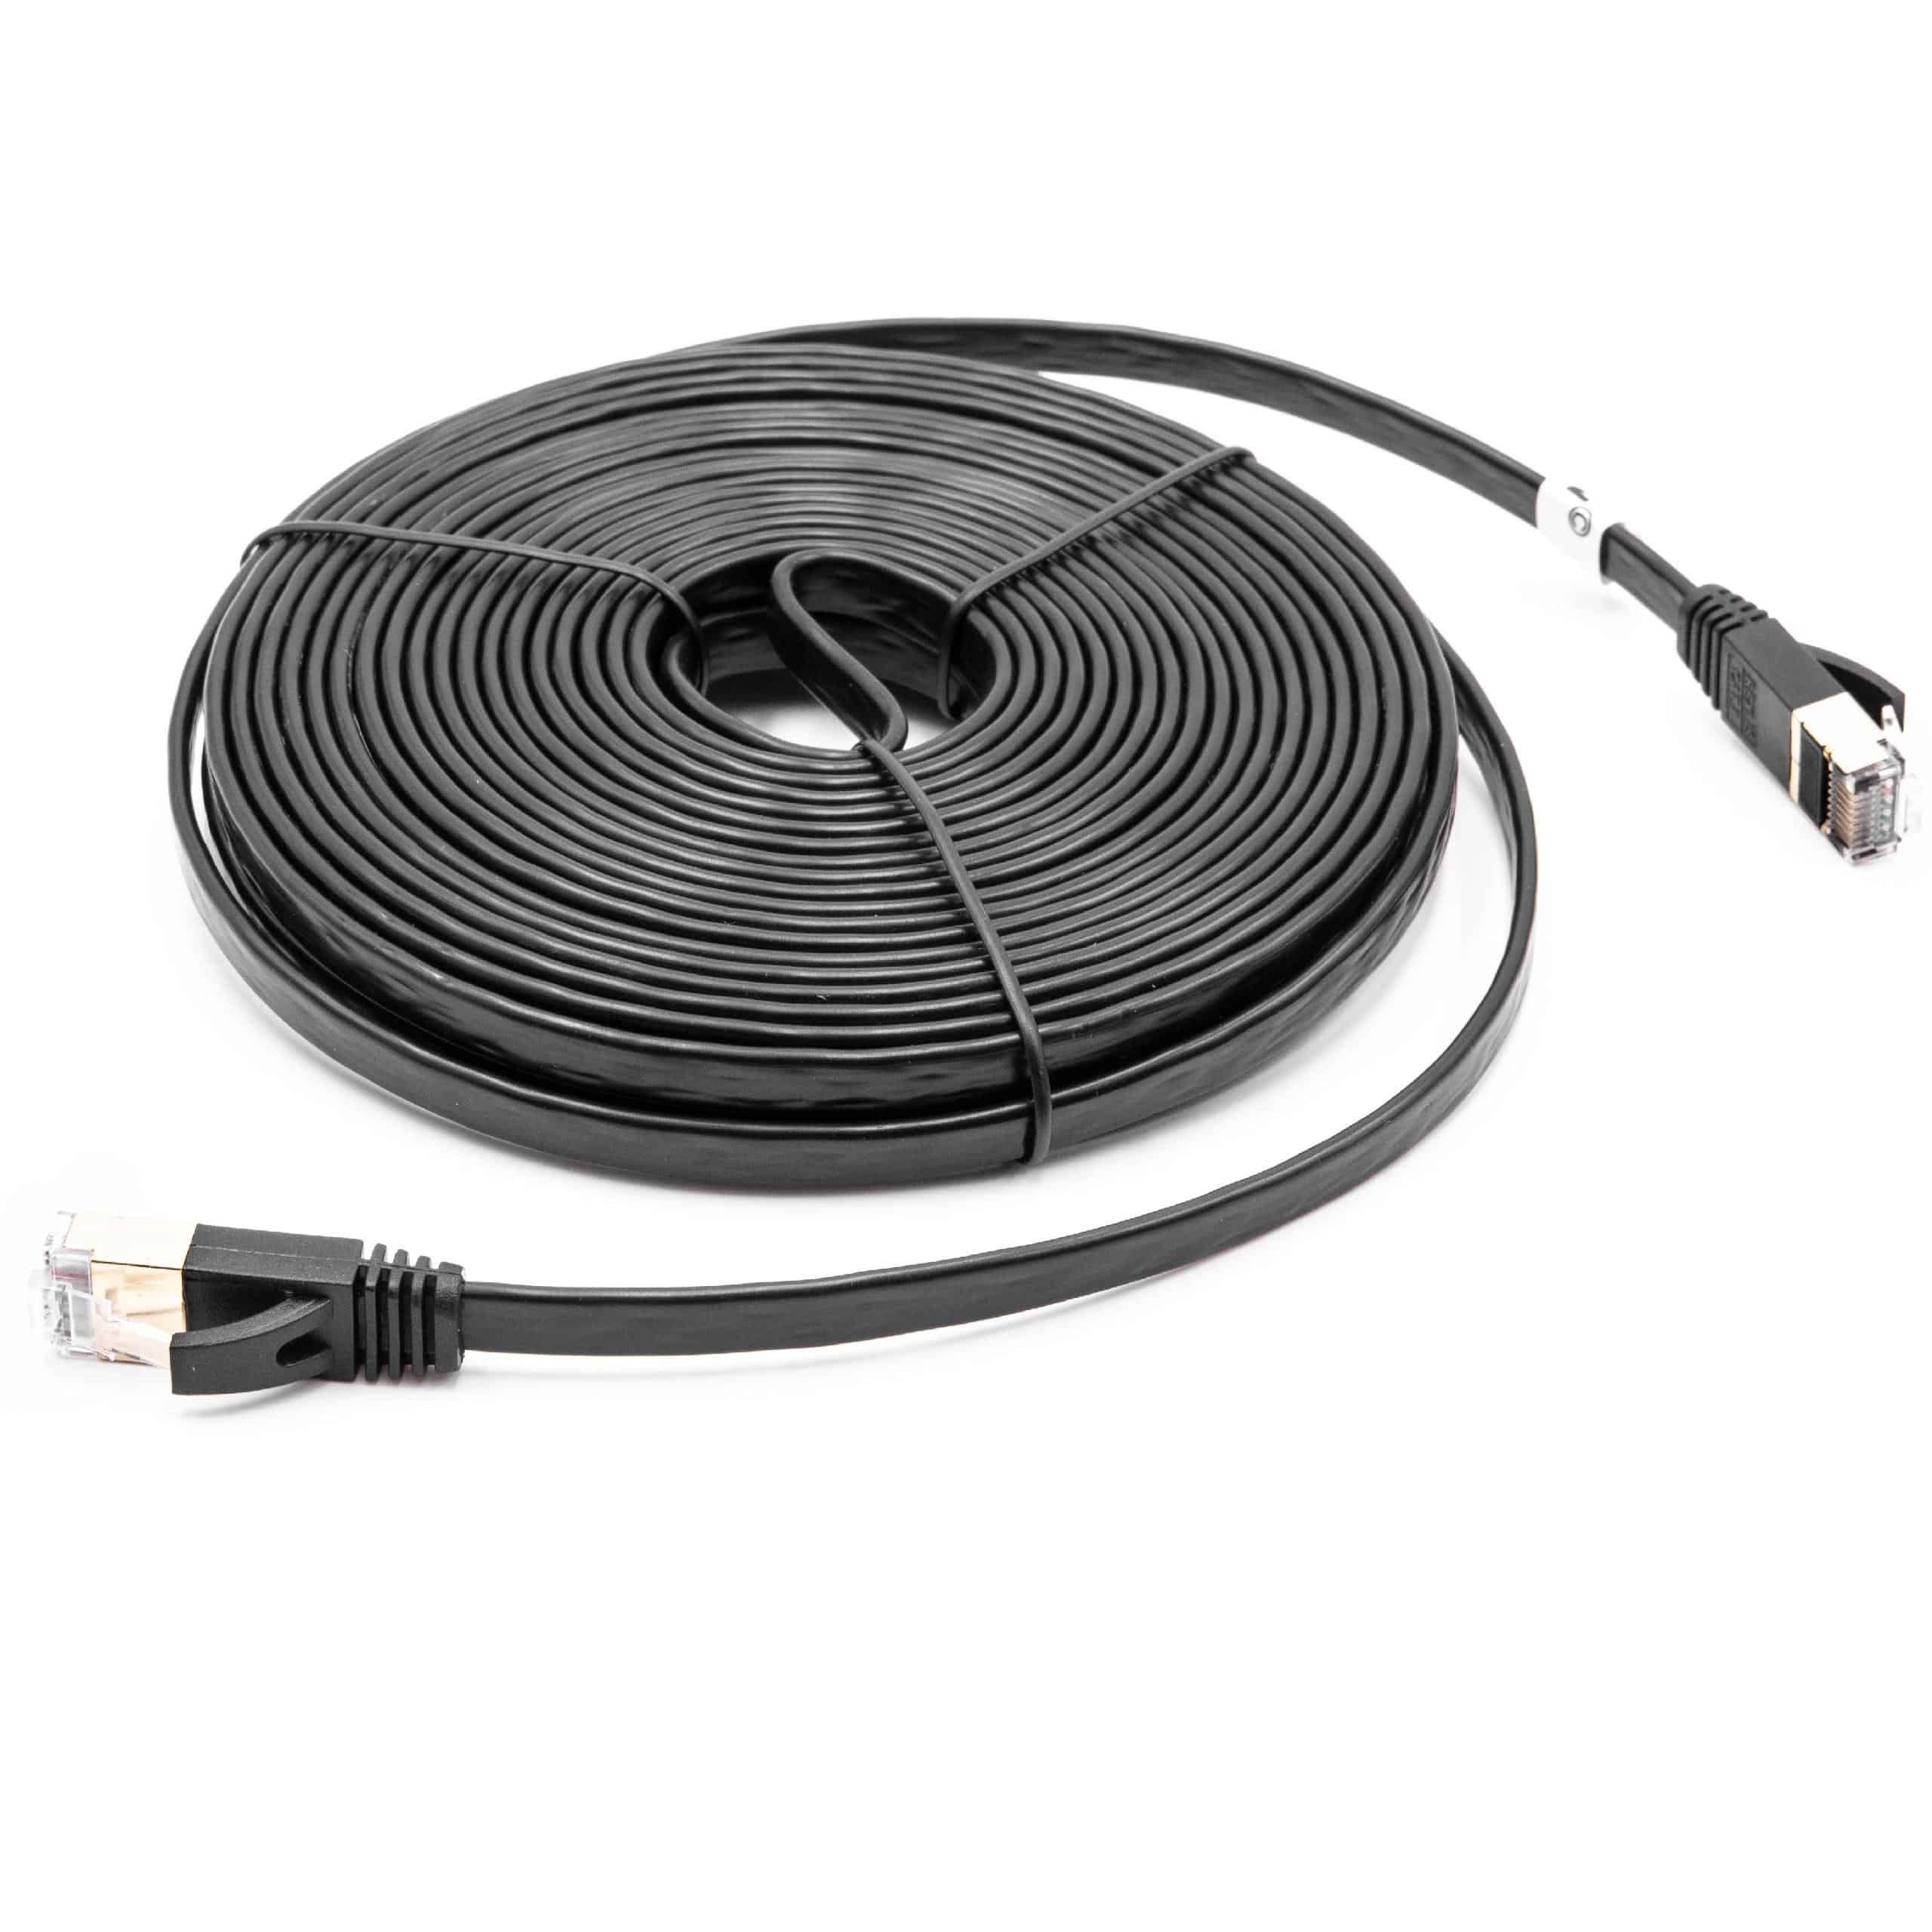 Cable de red de Ethernet, LAN, cable patch Cat7 10m negro cable plano de tendido